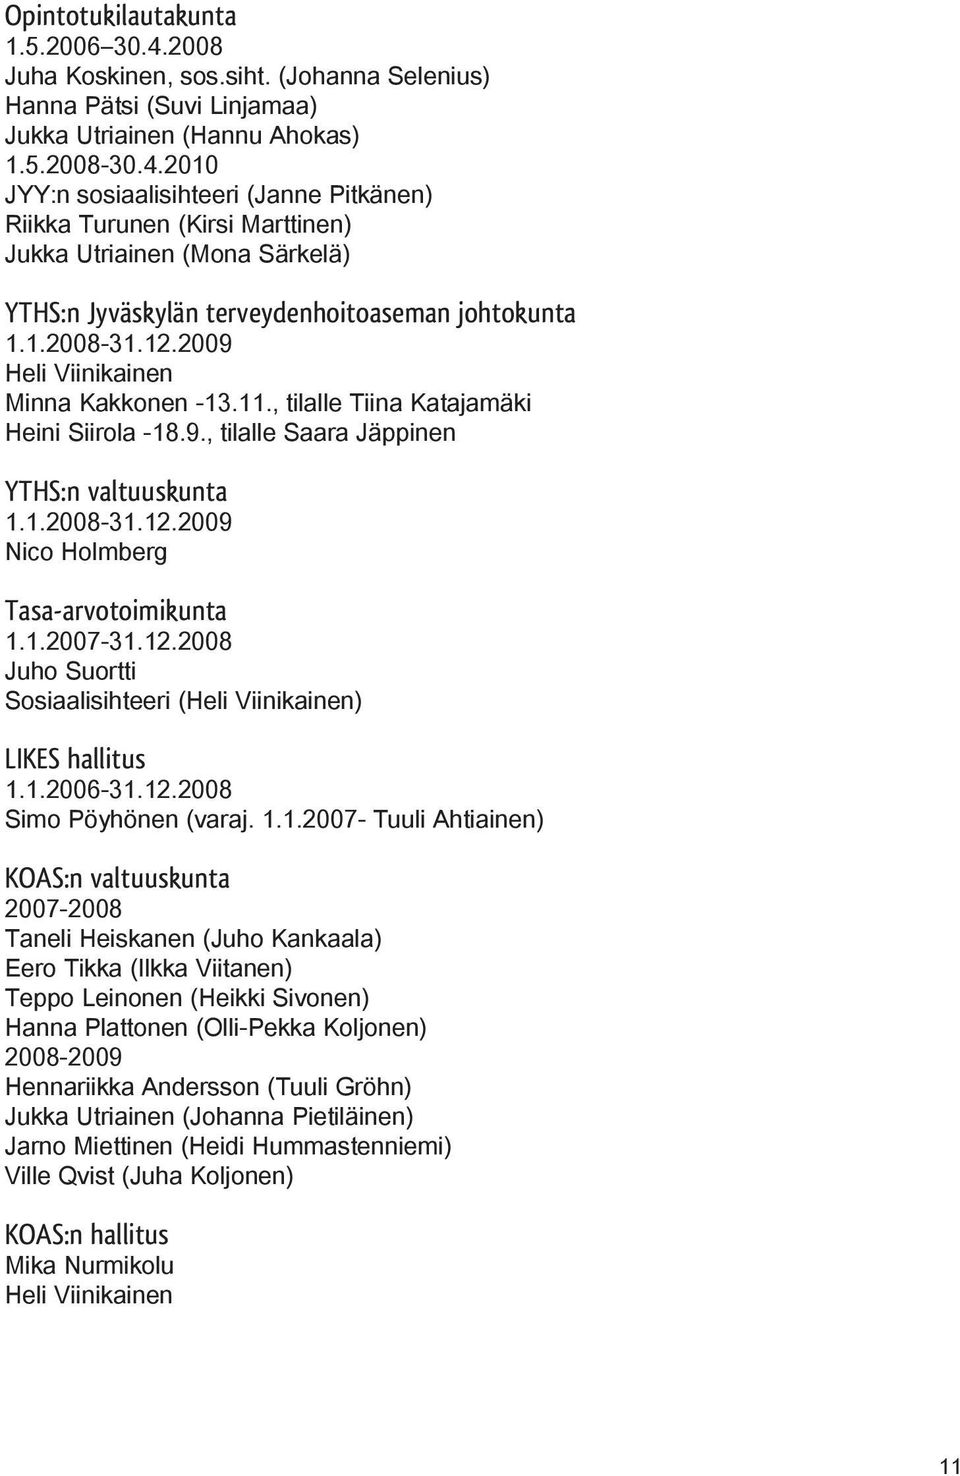 1.2007-31.12.2008 Juho Suortti Sosiaalisihteeri (Heli Viinikainen) LIKES hallitus 1.1.2006-31.12.2008 Simo Pöyhönen (varaj. 1.1.2007- Tuuli Ahtiainen) KOAS:n valtuuskunta 2007-2008 Taneli Heiskanen